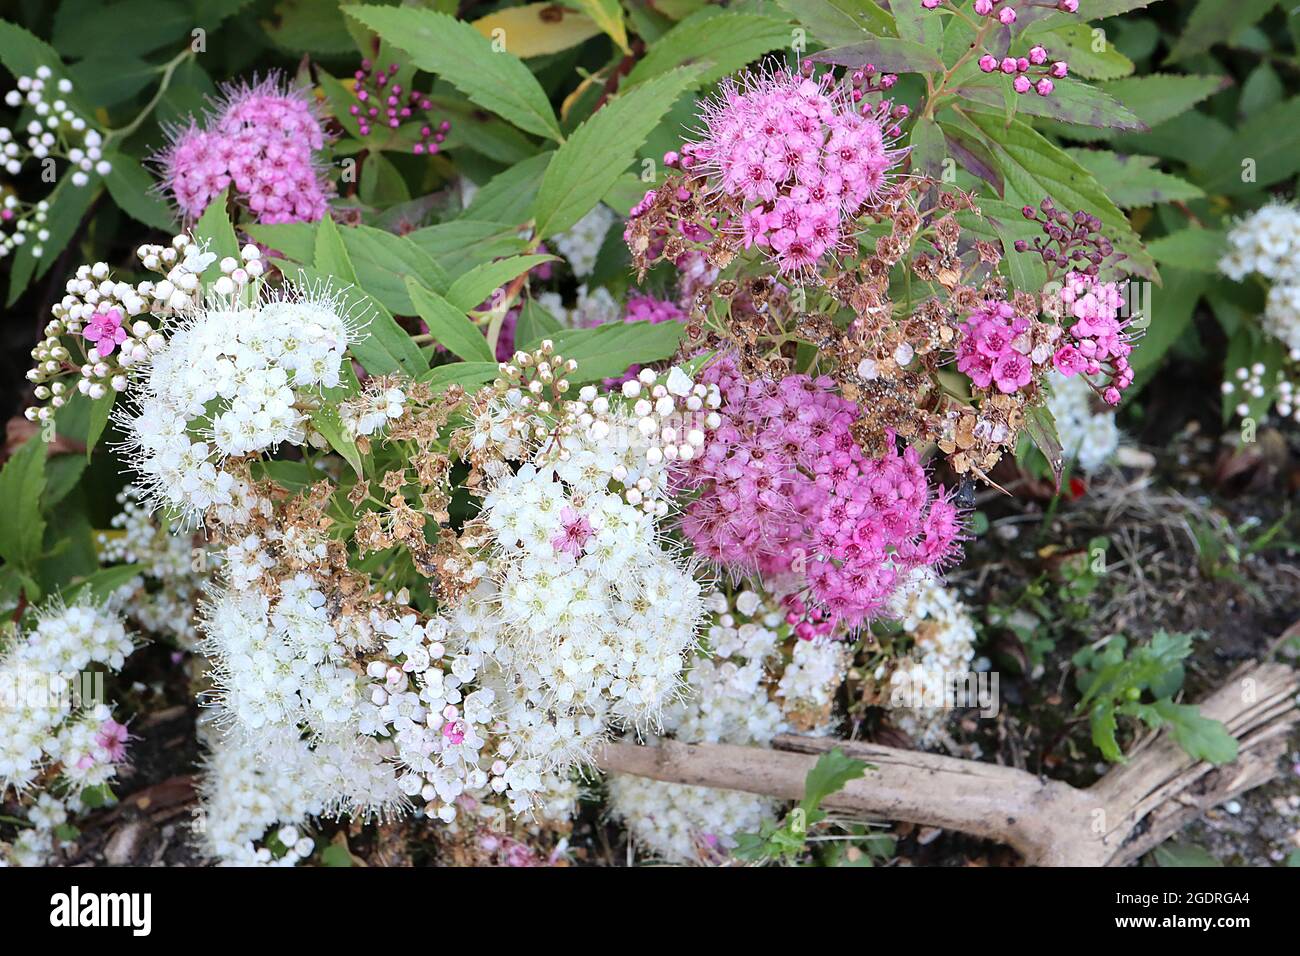 Spiraea japonica ‘Shirobana’ oder ‘Genpei’ japanische Spirea Shirobana – dichte Cluster rosa-weißer, salverförmiger Blüten und mittelgrüner Lanze Stockfoto